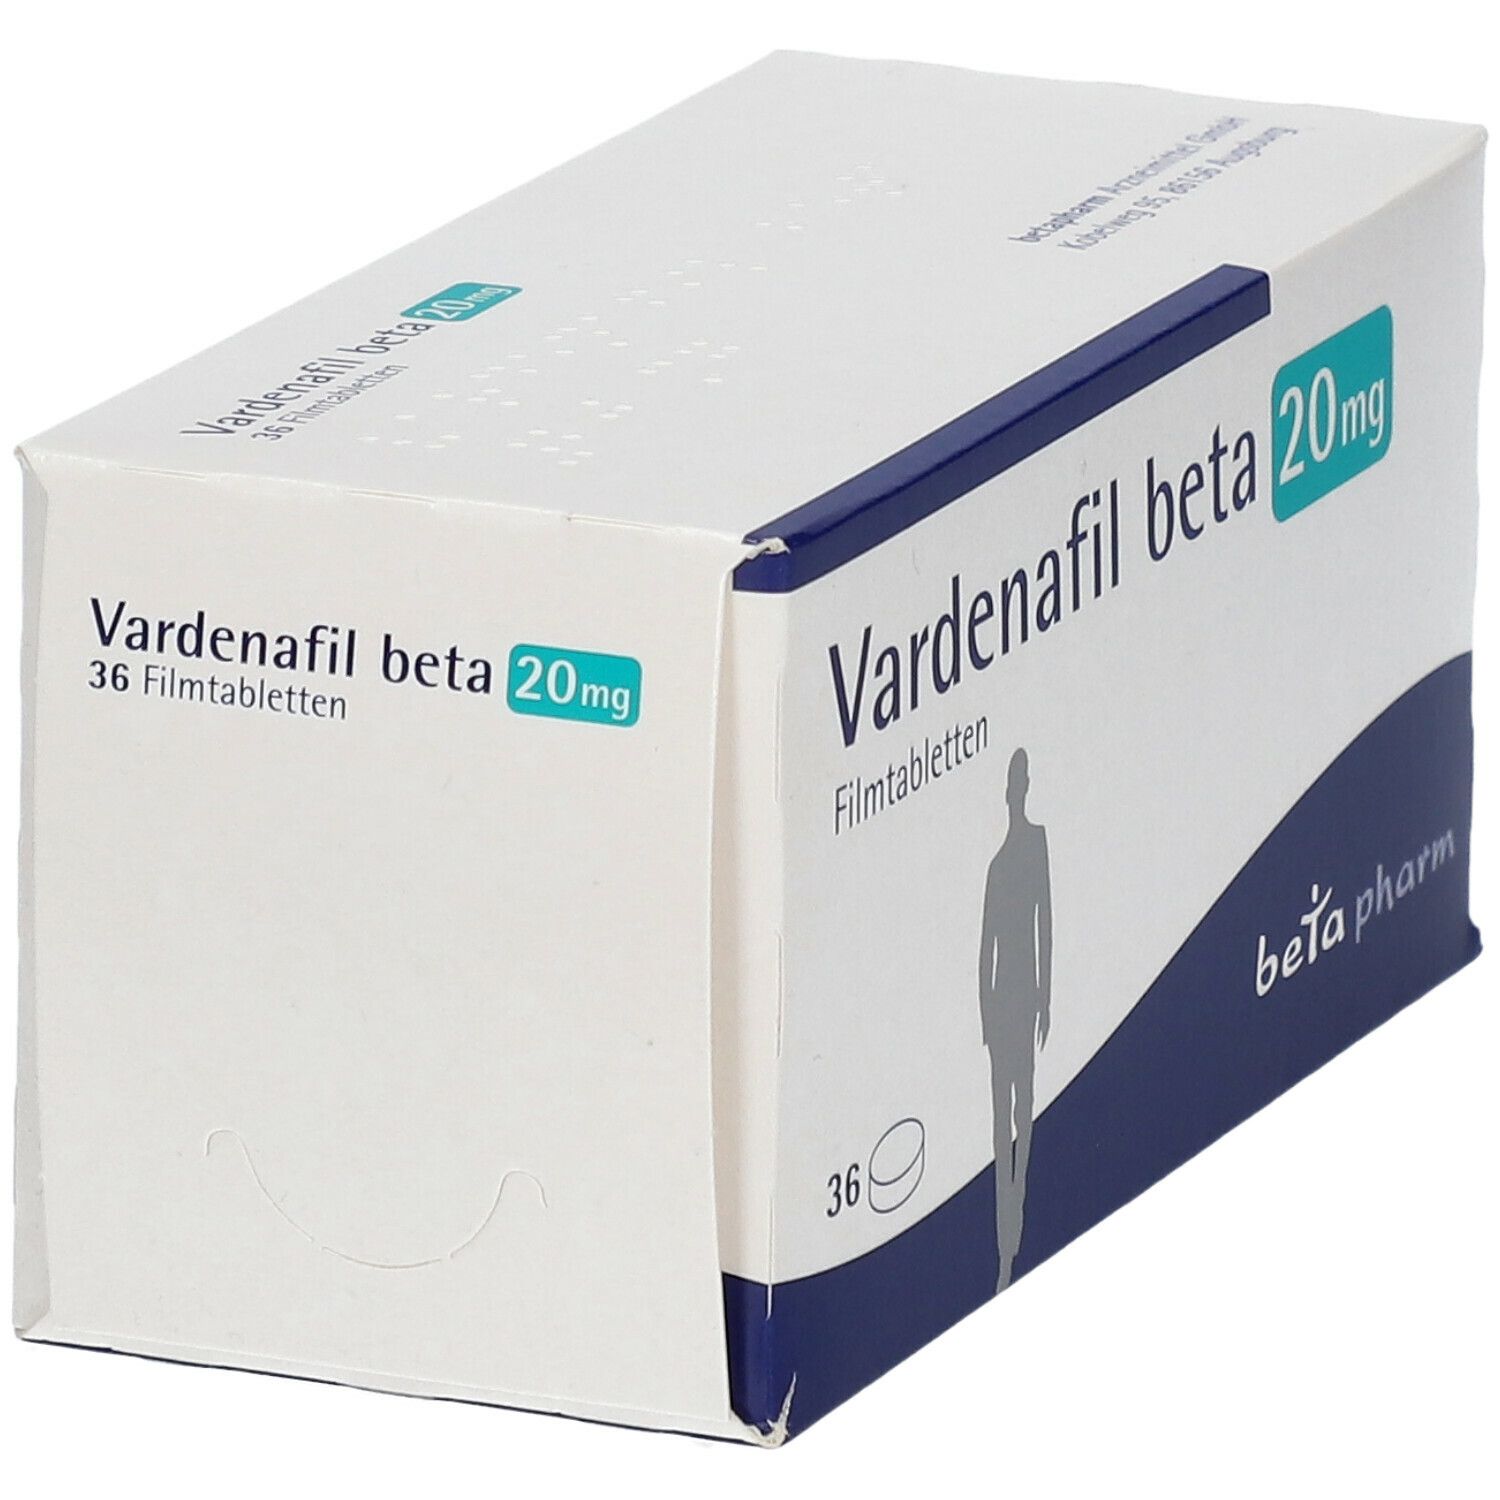 Vardenafil beta 20 mg